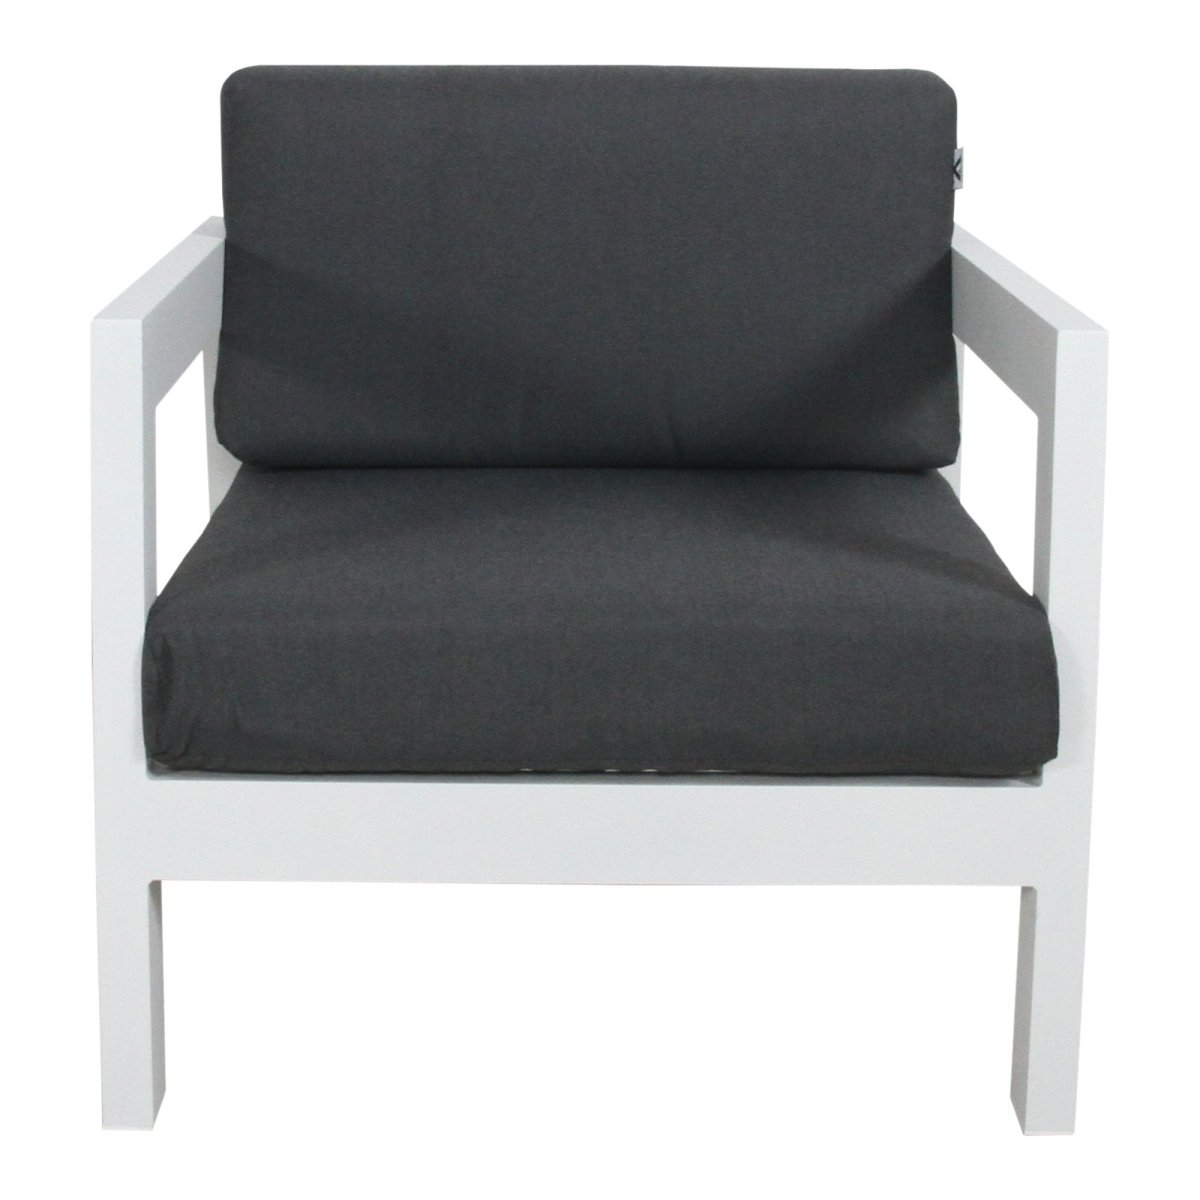 Outie 2pc Set 1+2 Seater Outdoor Sofa Lounge Aluminium Frame White - Outdoorium